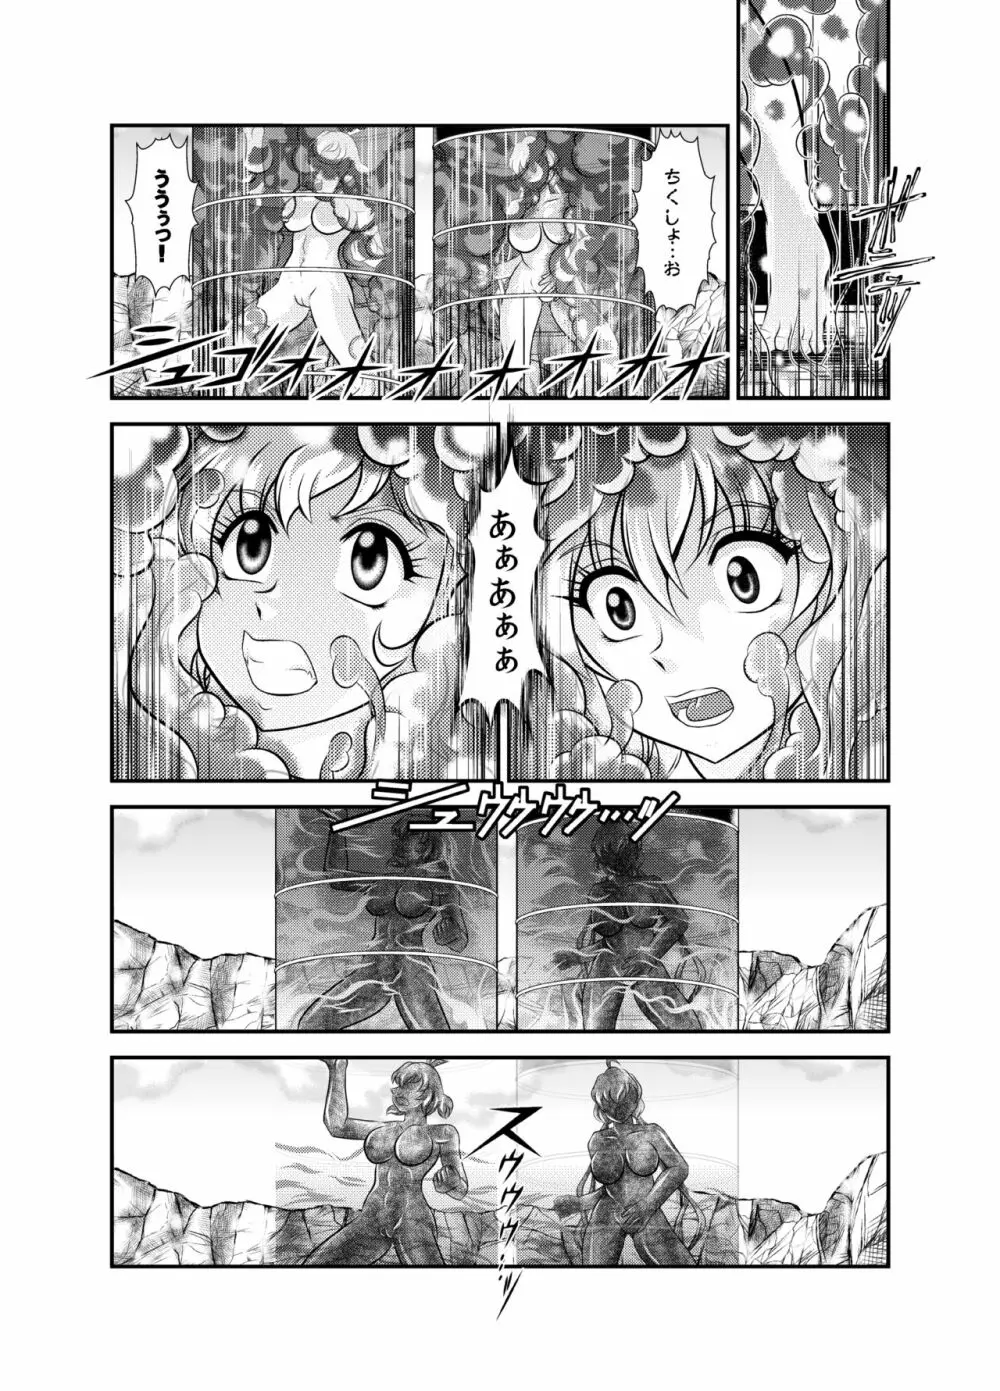 戦姫全滅 EP2:立花響&雪音クリス 16ページ